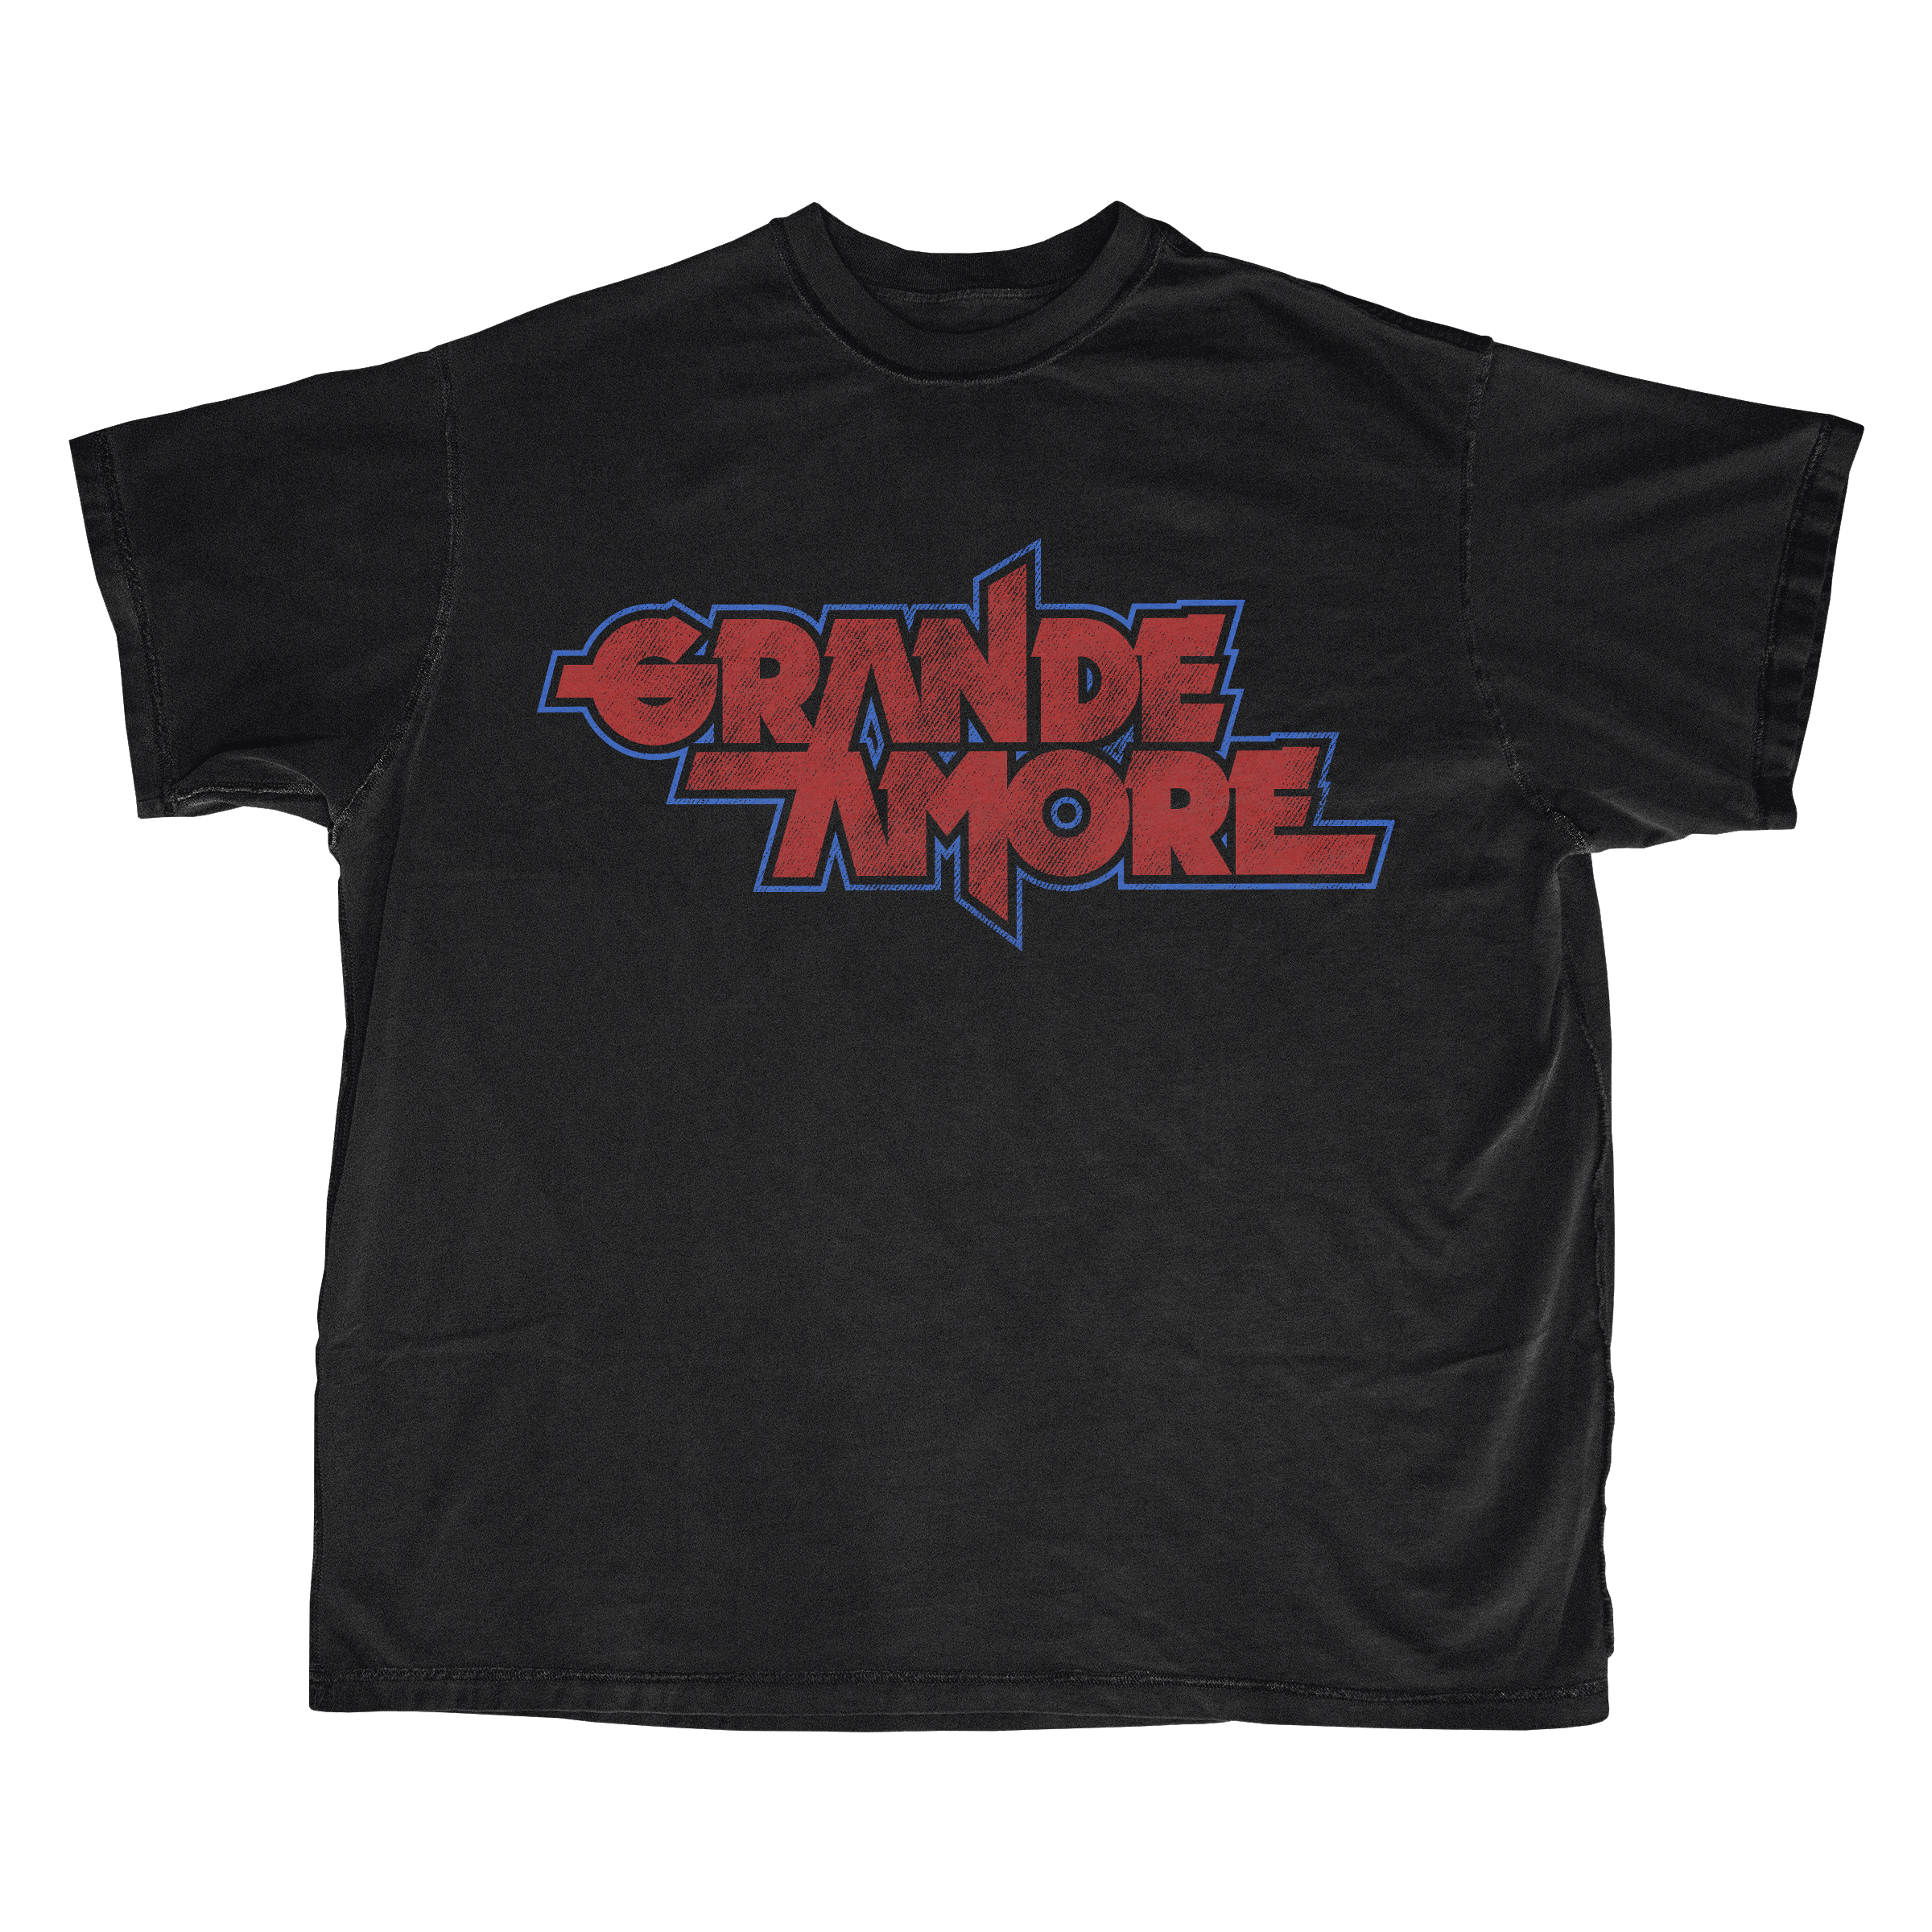 ensalada zapatilla tsunami GRANDE AMORE. Camiseta negra con logo – Ernie Records